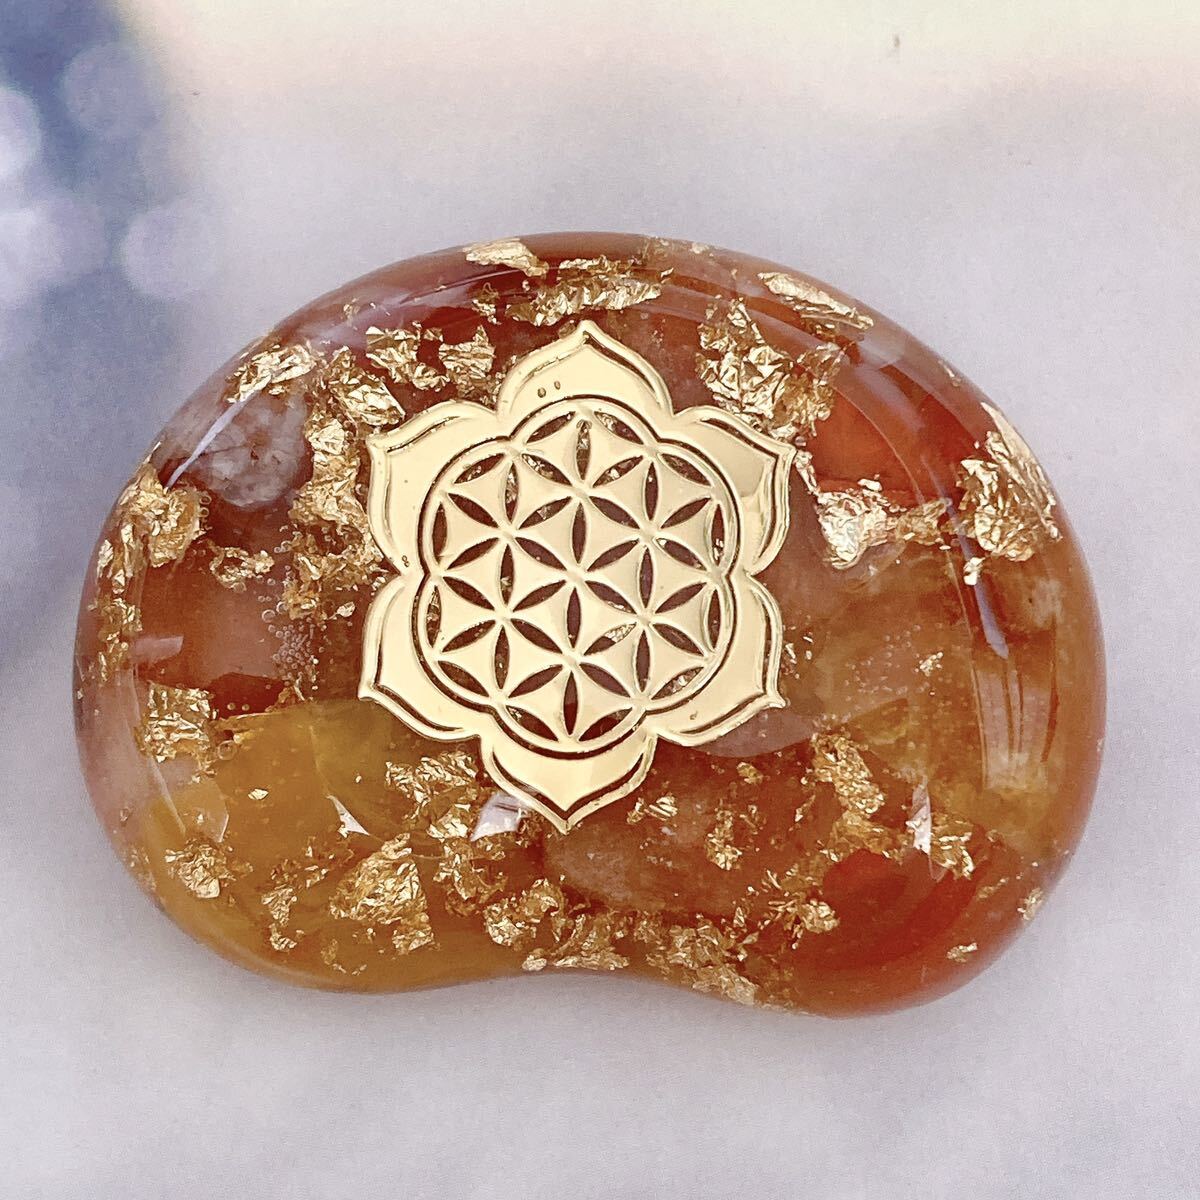 Amuleto orgonita Piedra de agarre como haba Flor de loto de la vida, trabajos hechos a mano, interior, bienes varios, ornamento, objeto